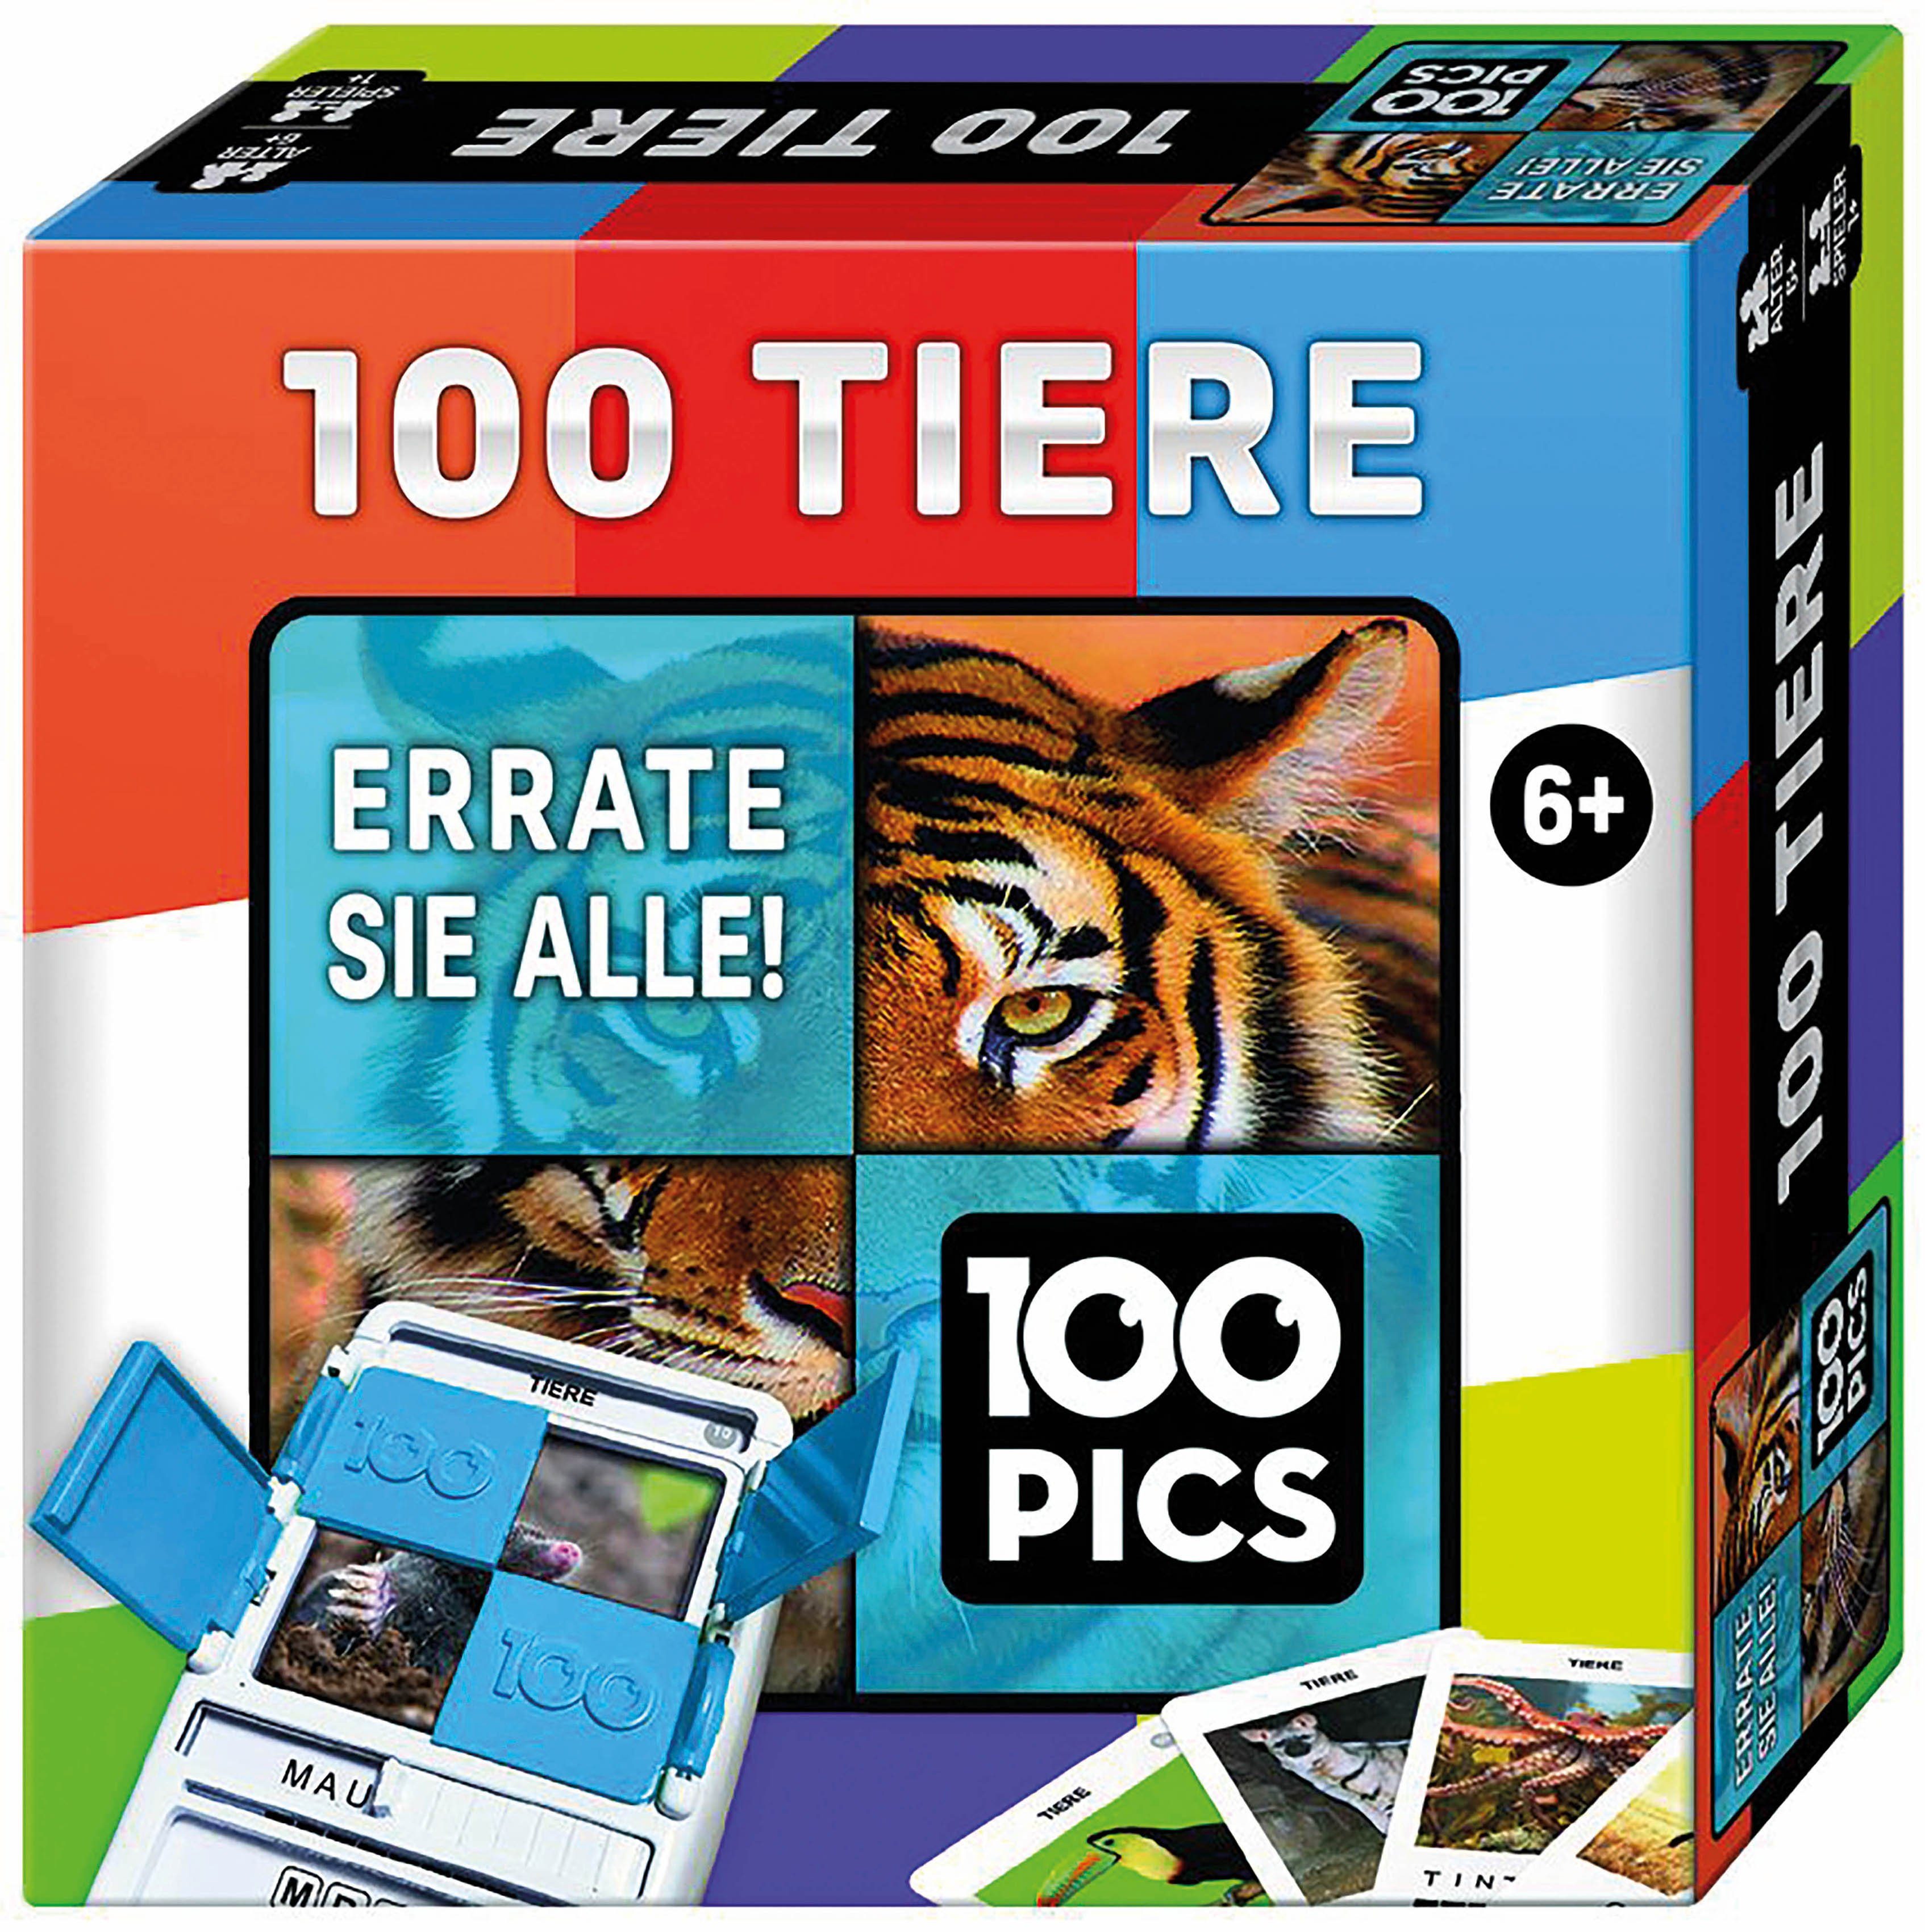 100 Tiere Quizspiel Spiel, Pics